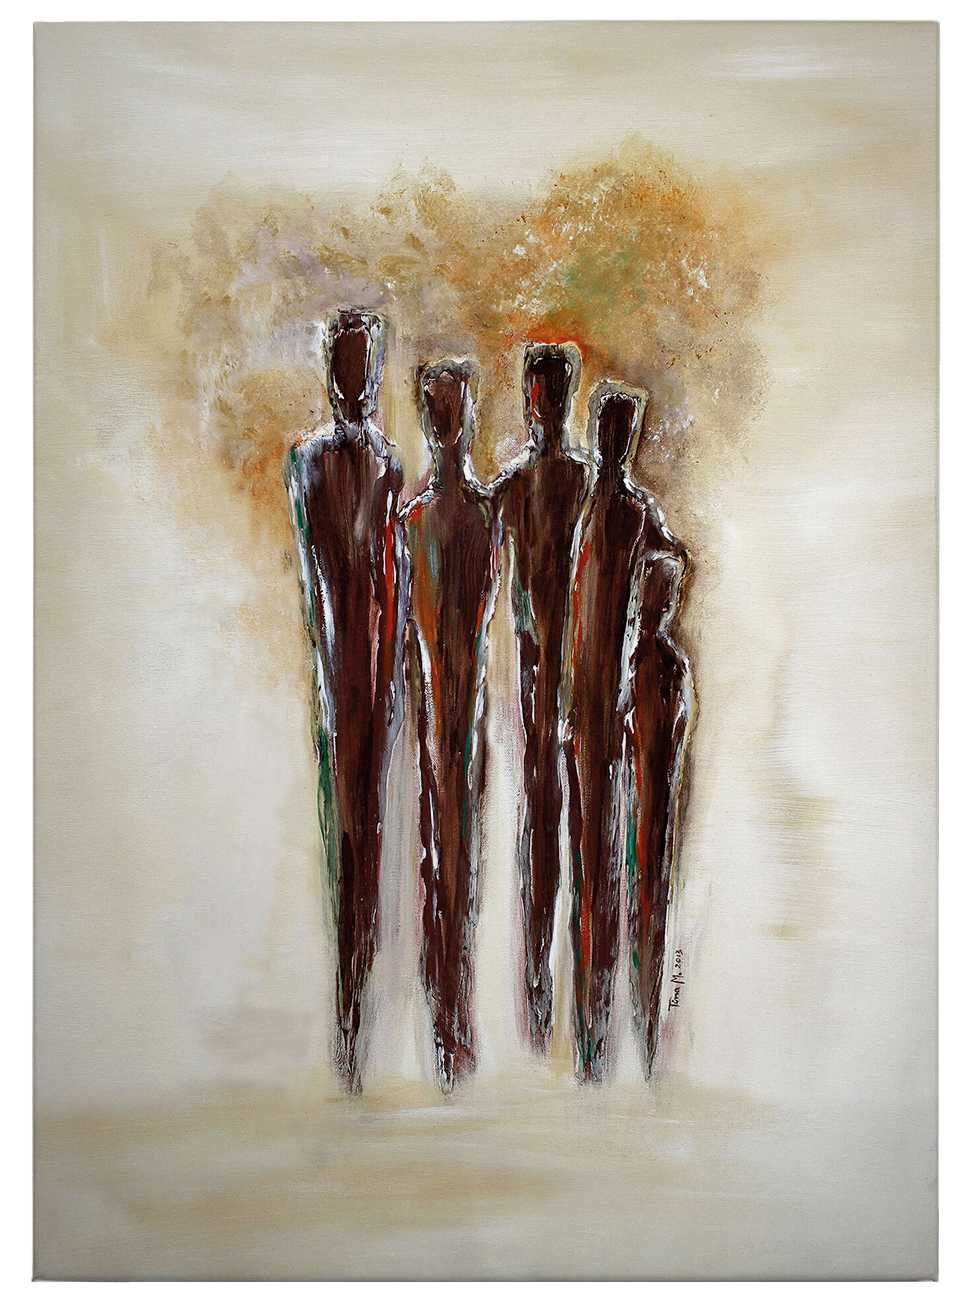             Quadro su tela Tina Melz "Together 02", formato ritratto - 0,50 m x 0,70 m
        